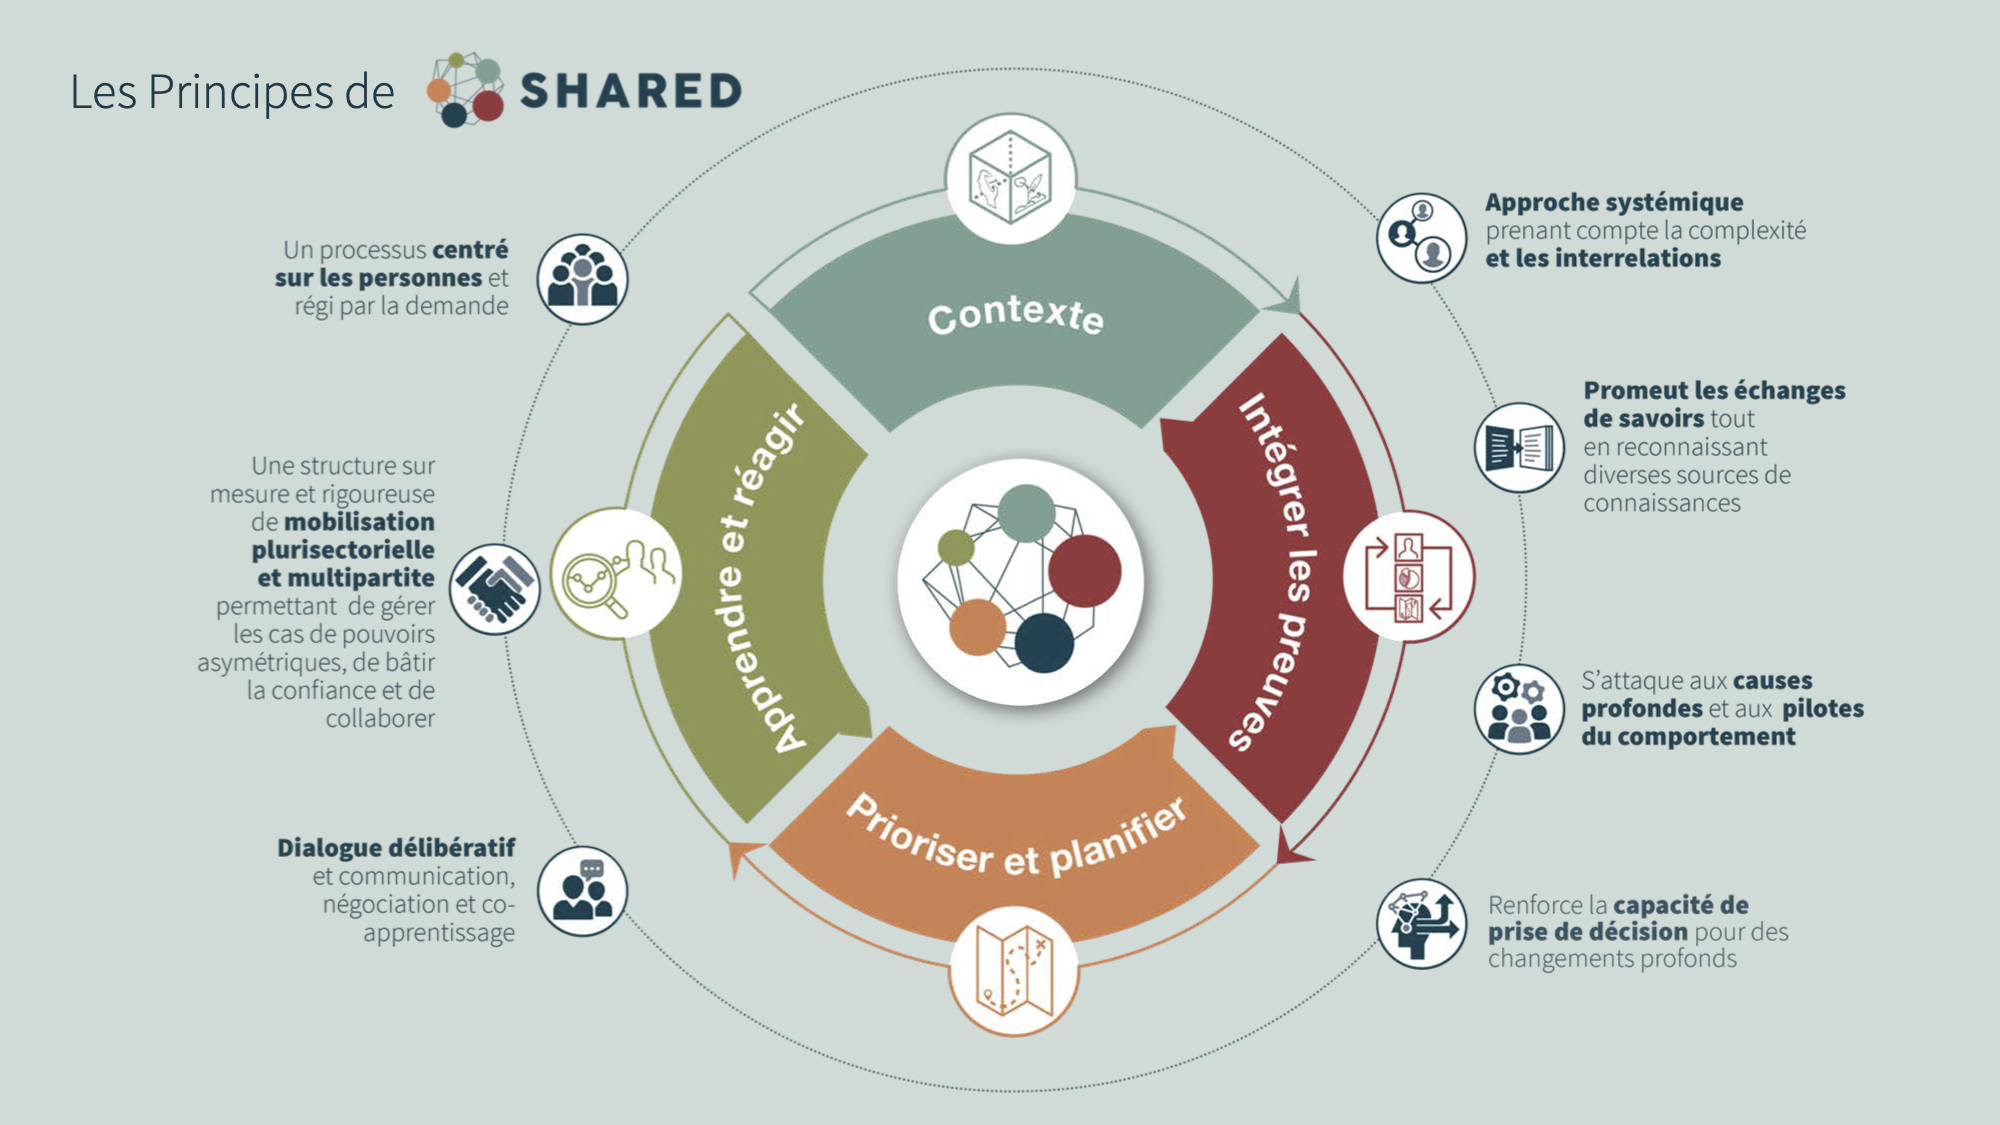 La méthodologie SHARED comprend quatre phases - comprendre le contexte, intégrer les preuves, prioriser et planifier, apprendre et réagir - qui peuvent être ajustées aux contextes décisionnels spécifiques.